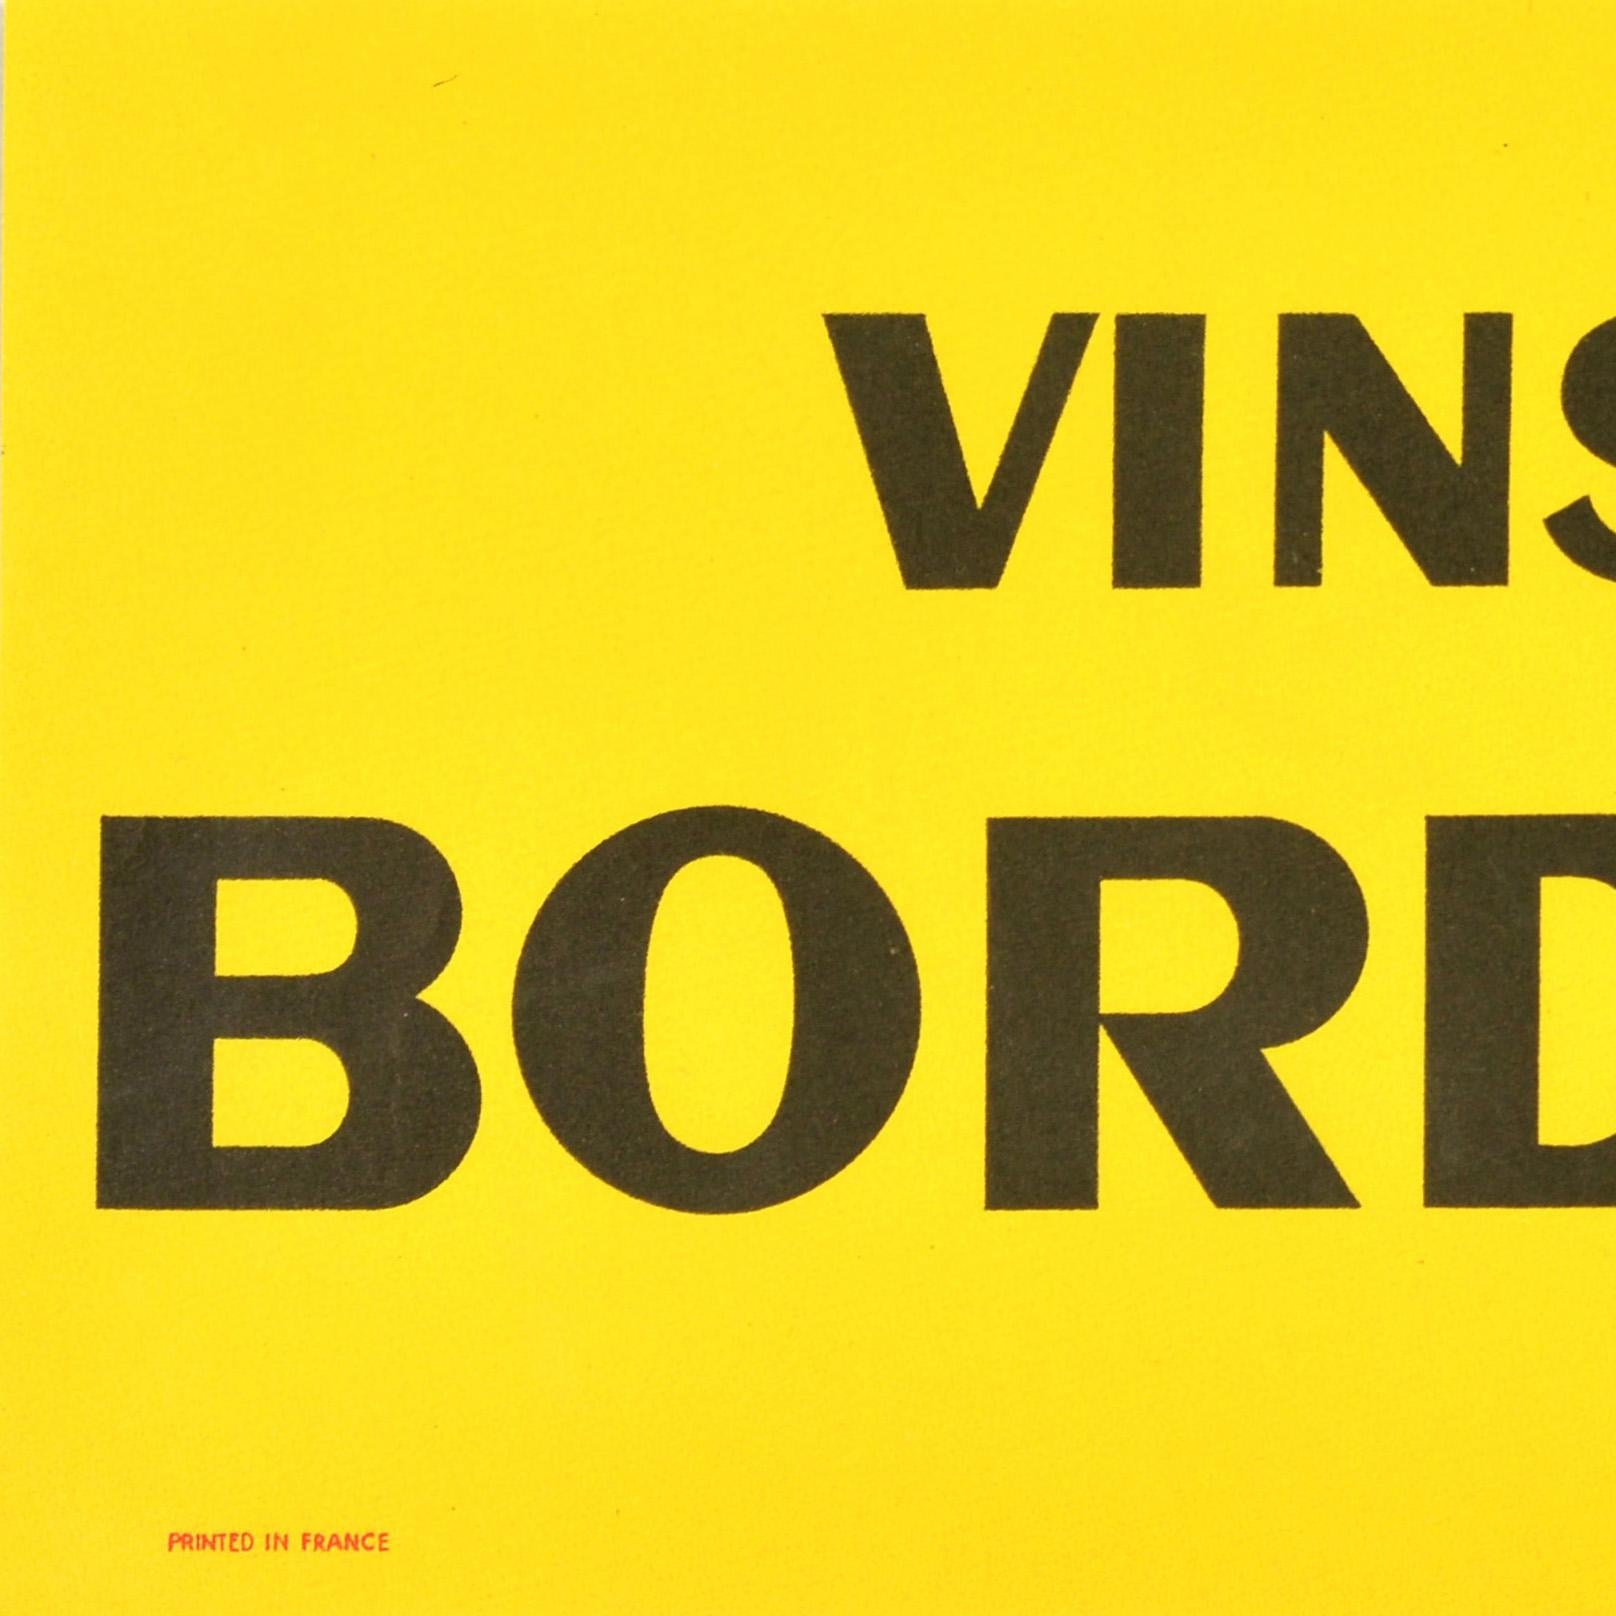 Affiche publicitaire originale pour les Vins de Bordeaux / Bordeaux wines of France, avec un dessin vif et coloré de l'artiste français Hervé Moran (1917-1980) représentant un tire-bouchon avec une base en forme d'ancre sur un fond jaune, la fleur